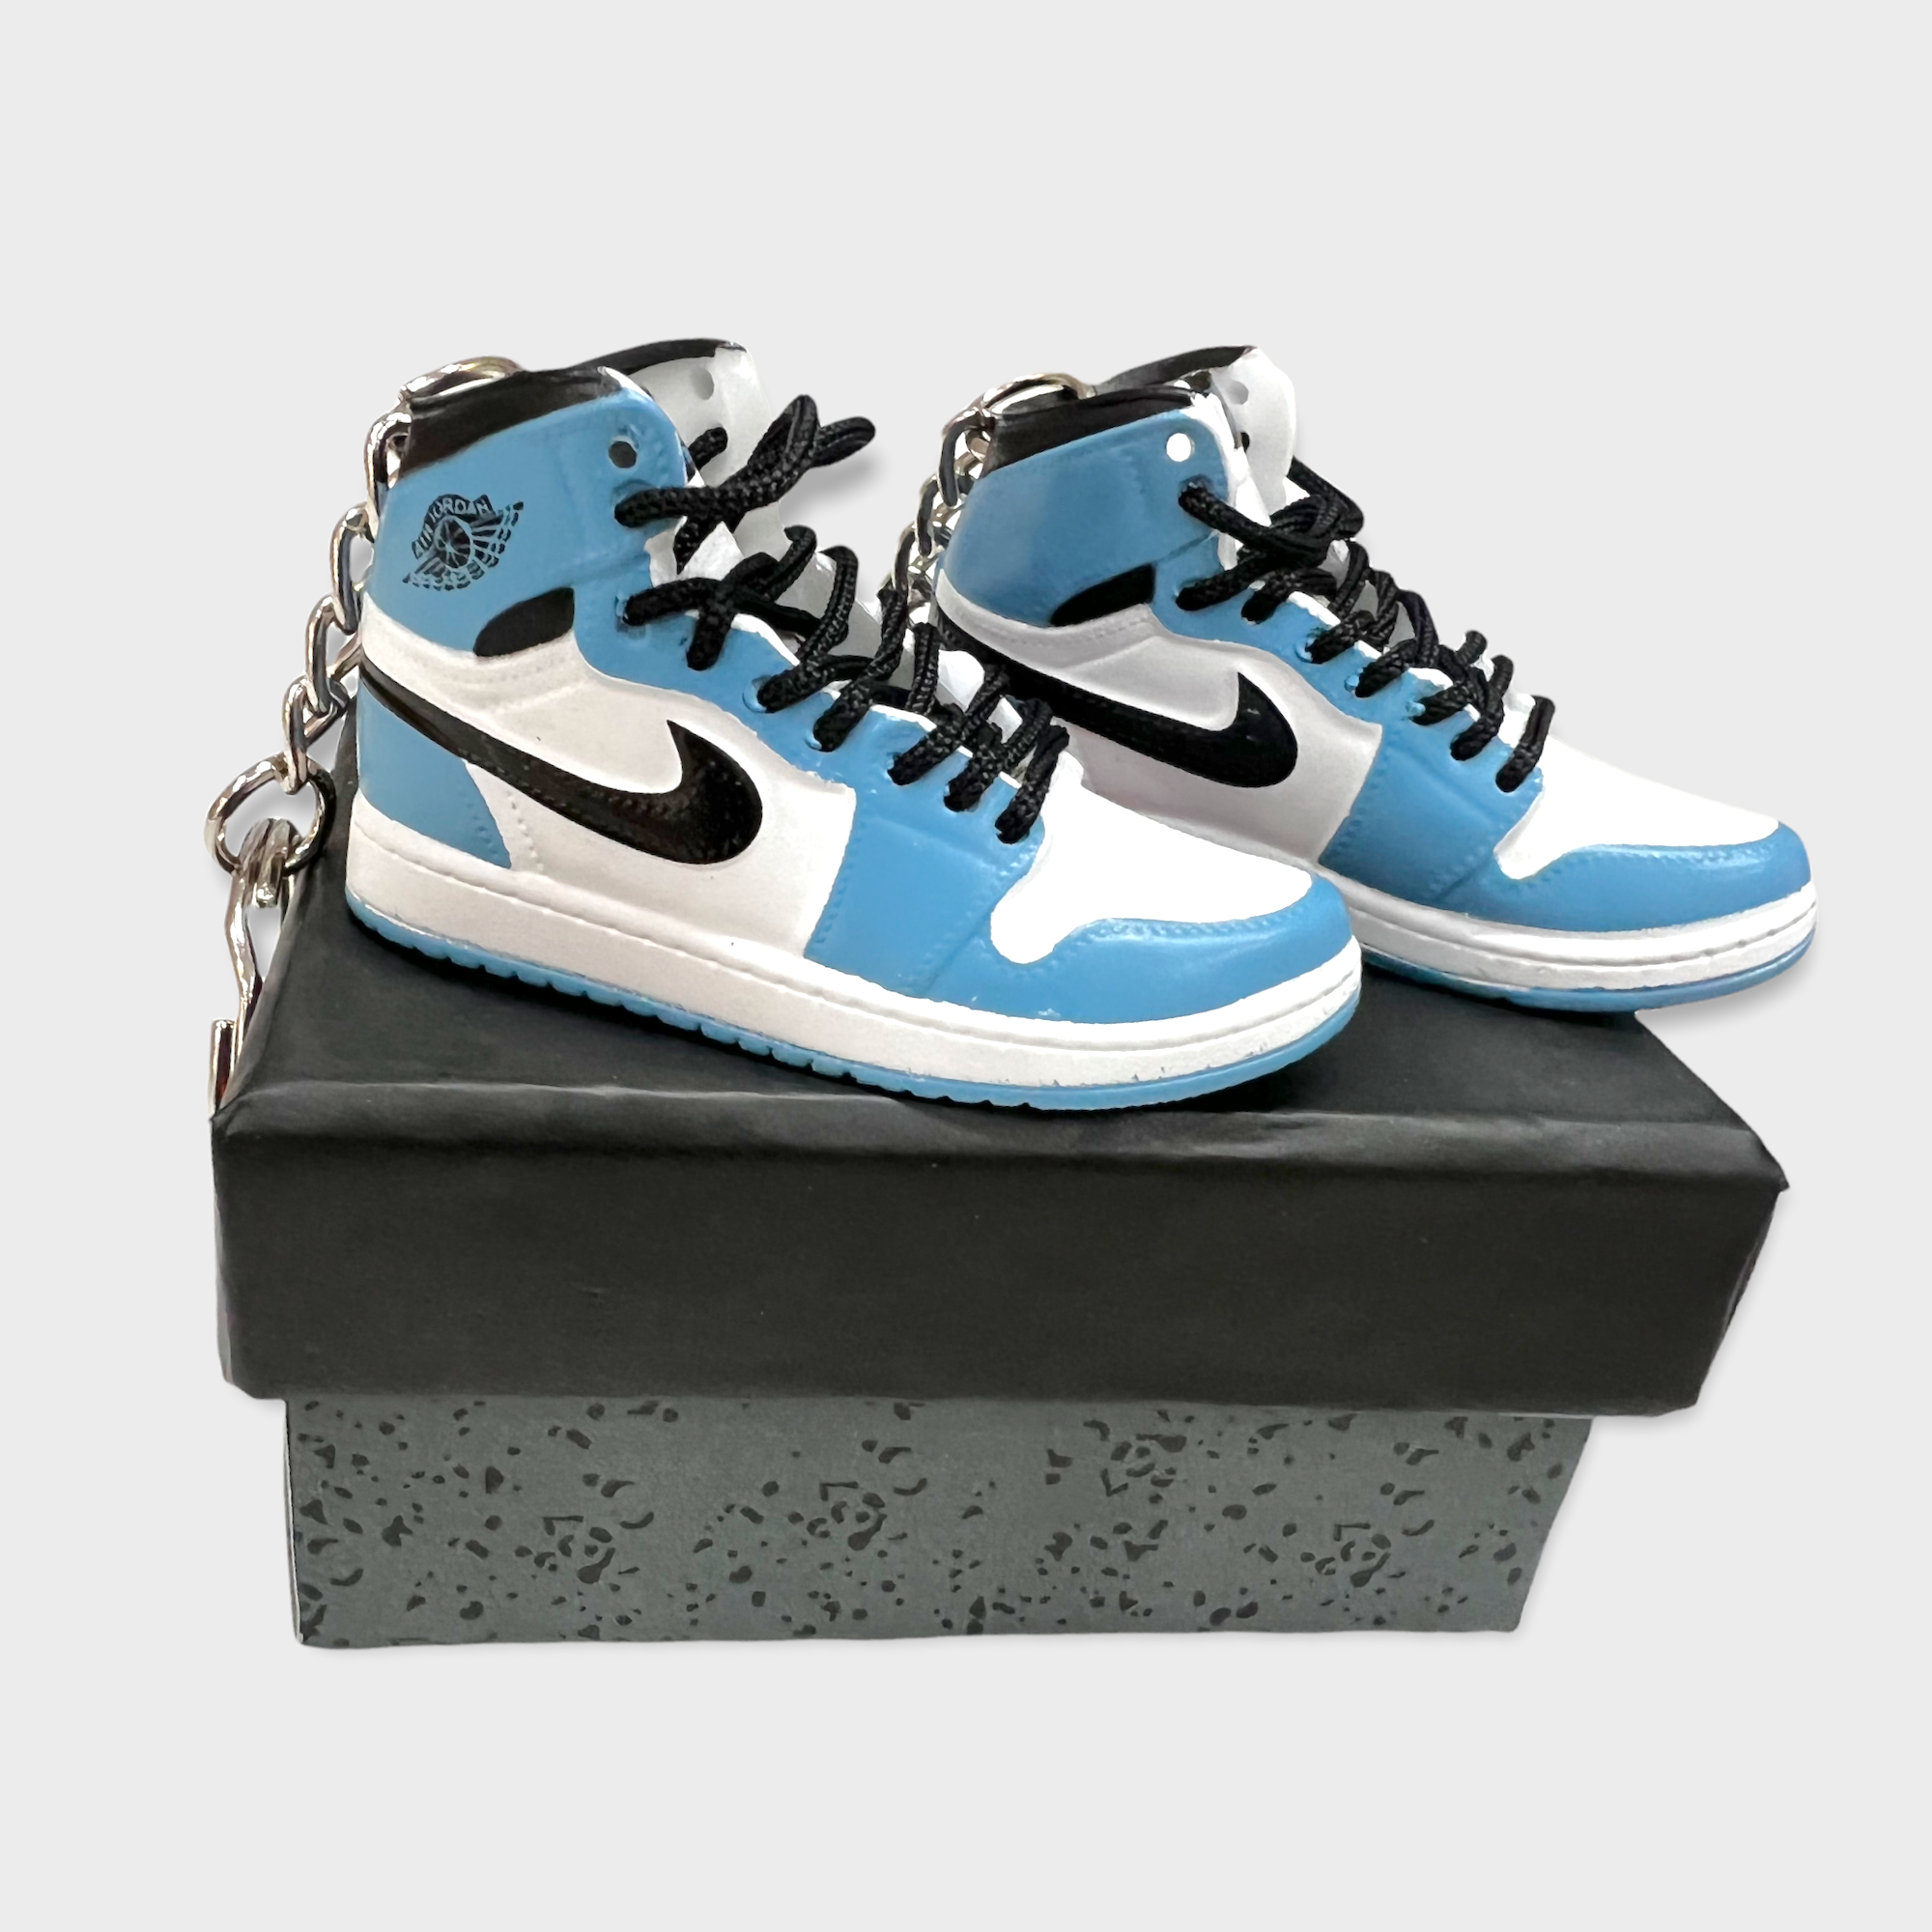 Portachiavi Mini Sneakers - Jordan 1 retro high University Blue